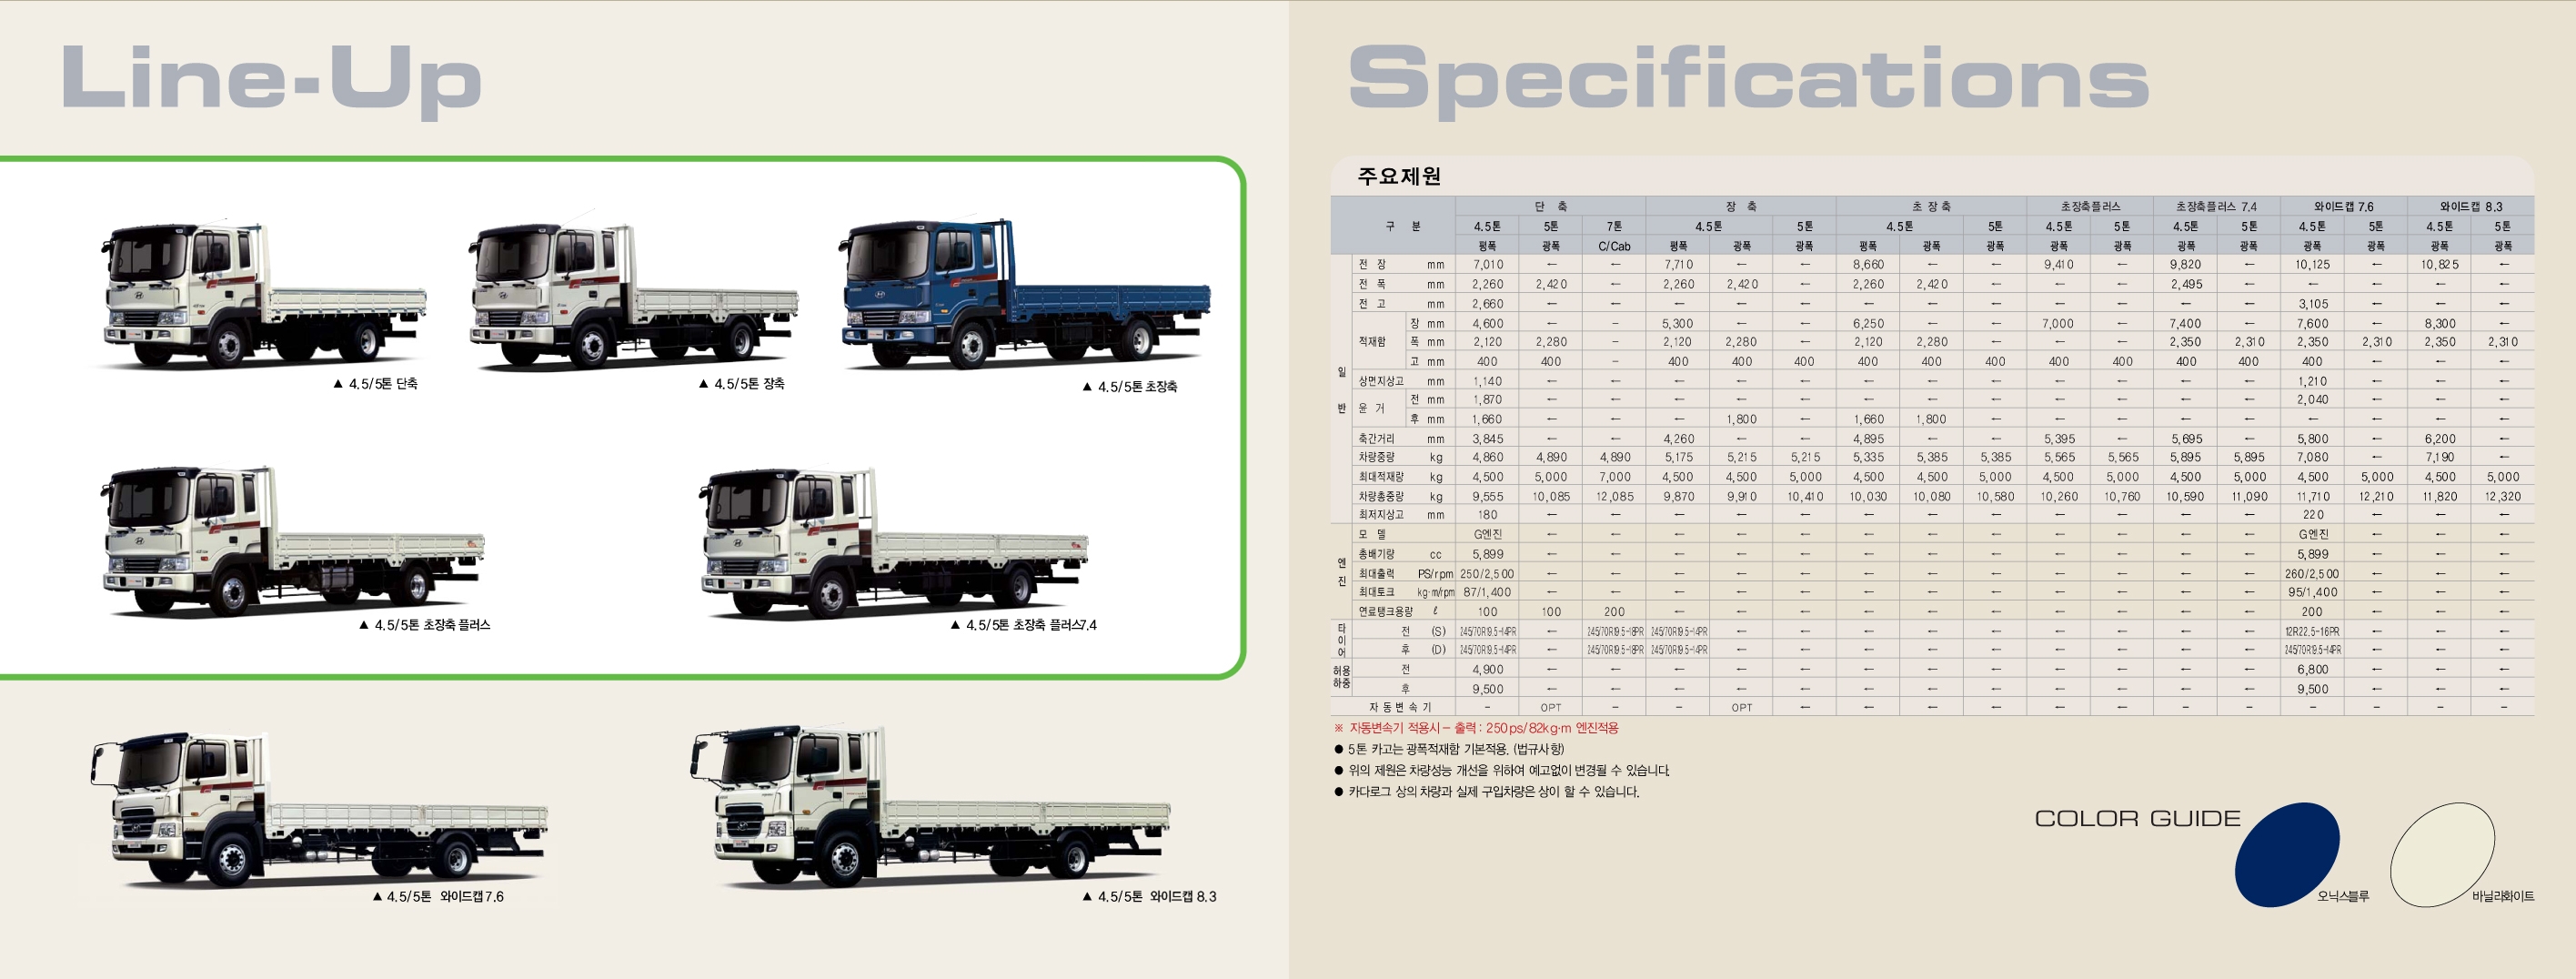 현대 메가트럭 리스견적, 비용, 제원, 가격, 카다로그 (4.5톤, 5톤, 와이드캡, 초장축, 특장차